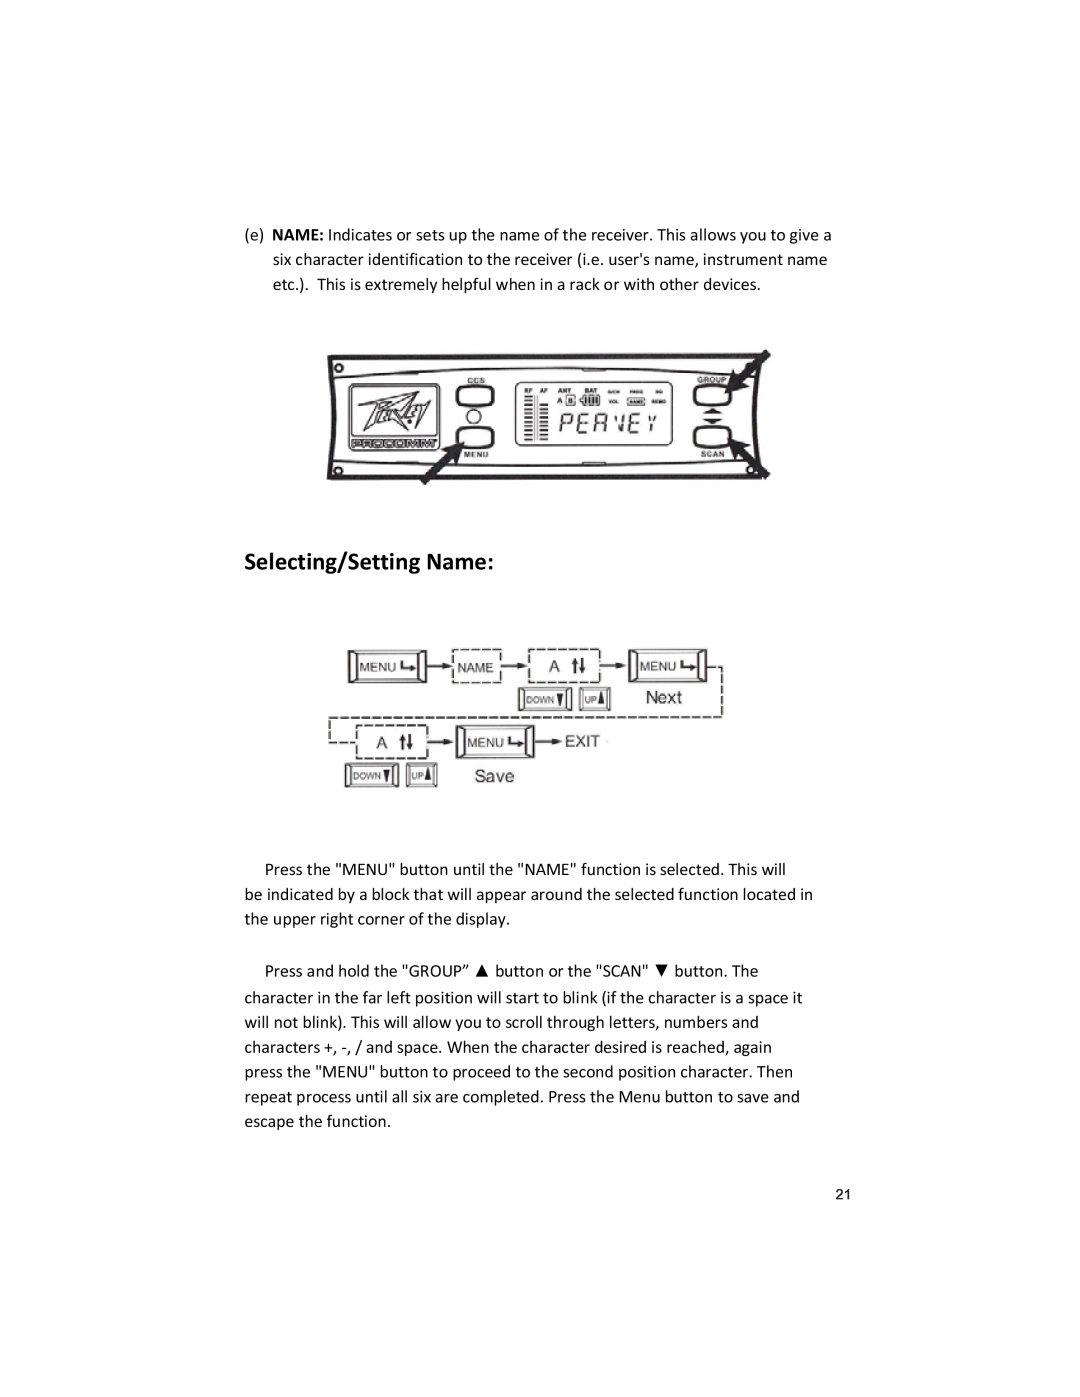 Peavey U1002 manual Selecting/Setting Name 